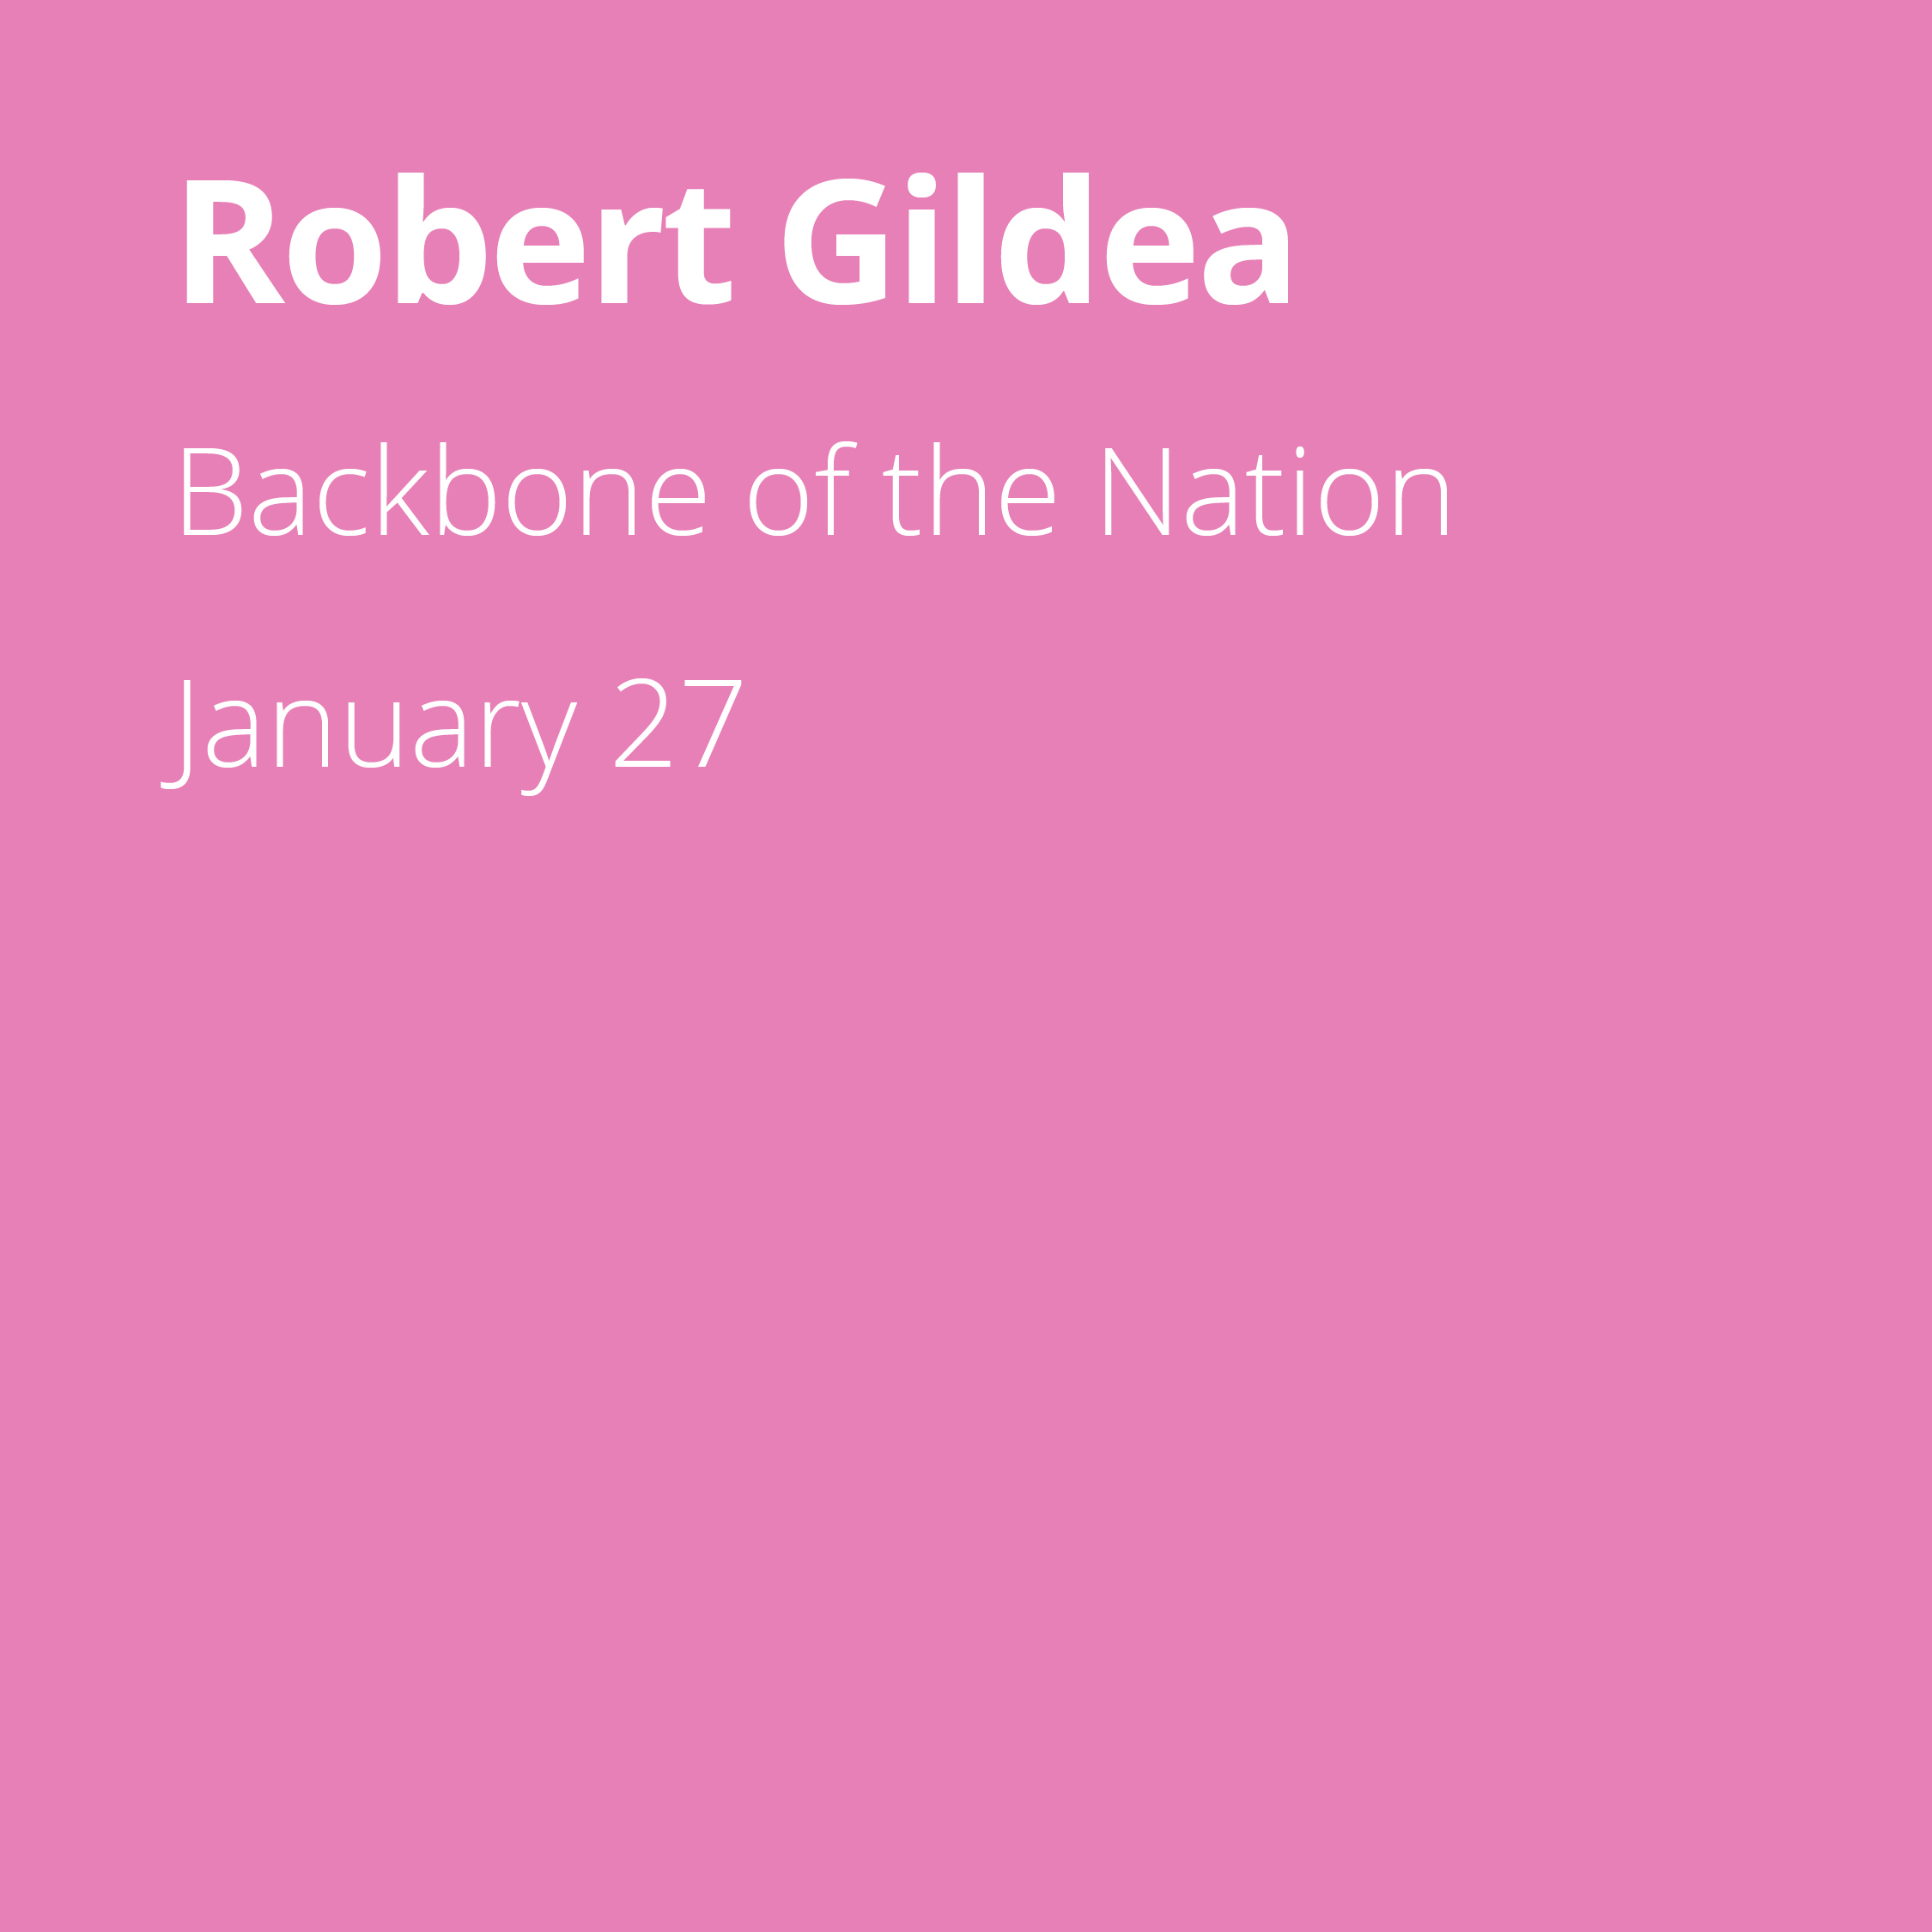 Robert Gildea